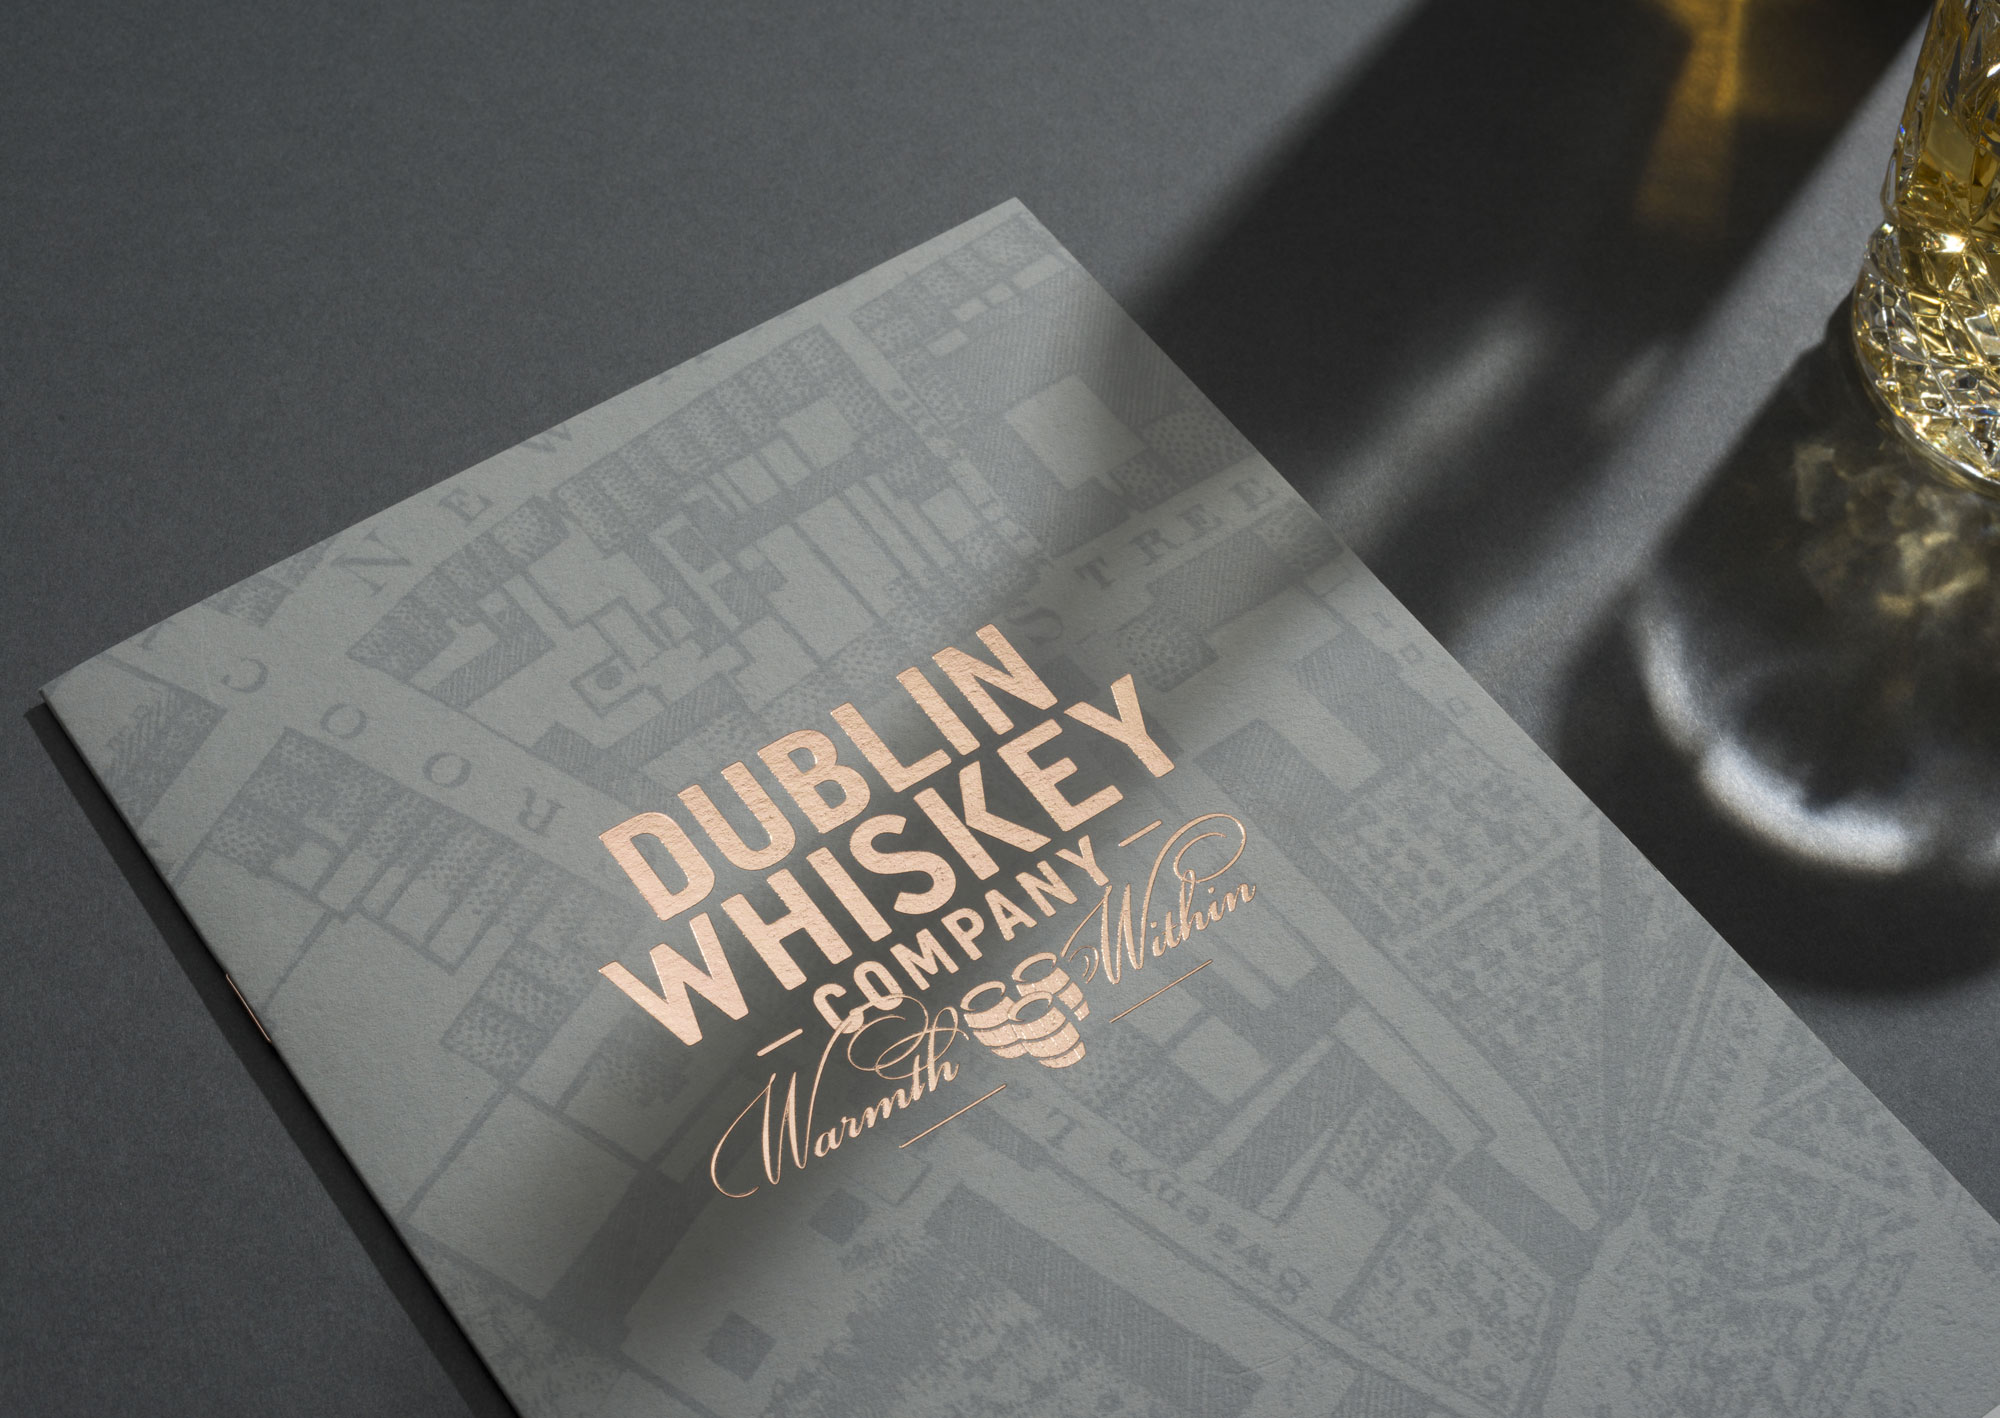 Cover image: Dublin Whiskey Company